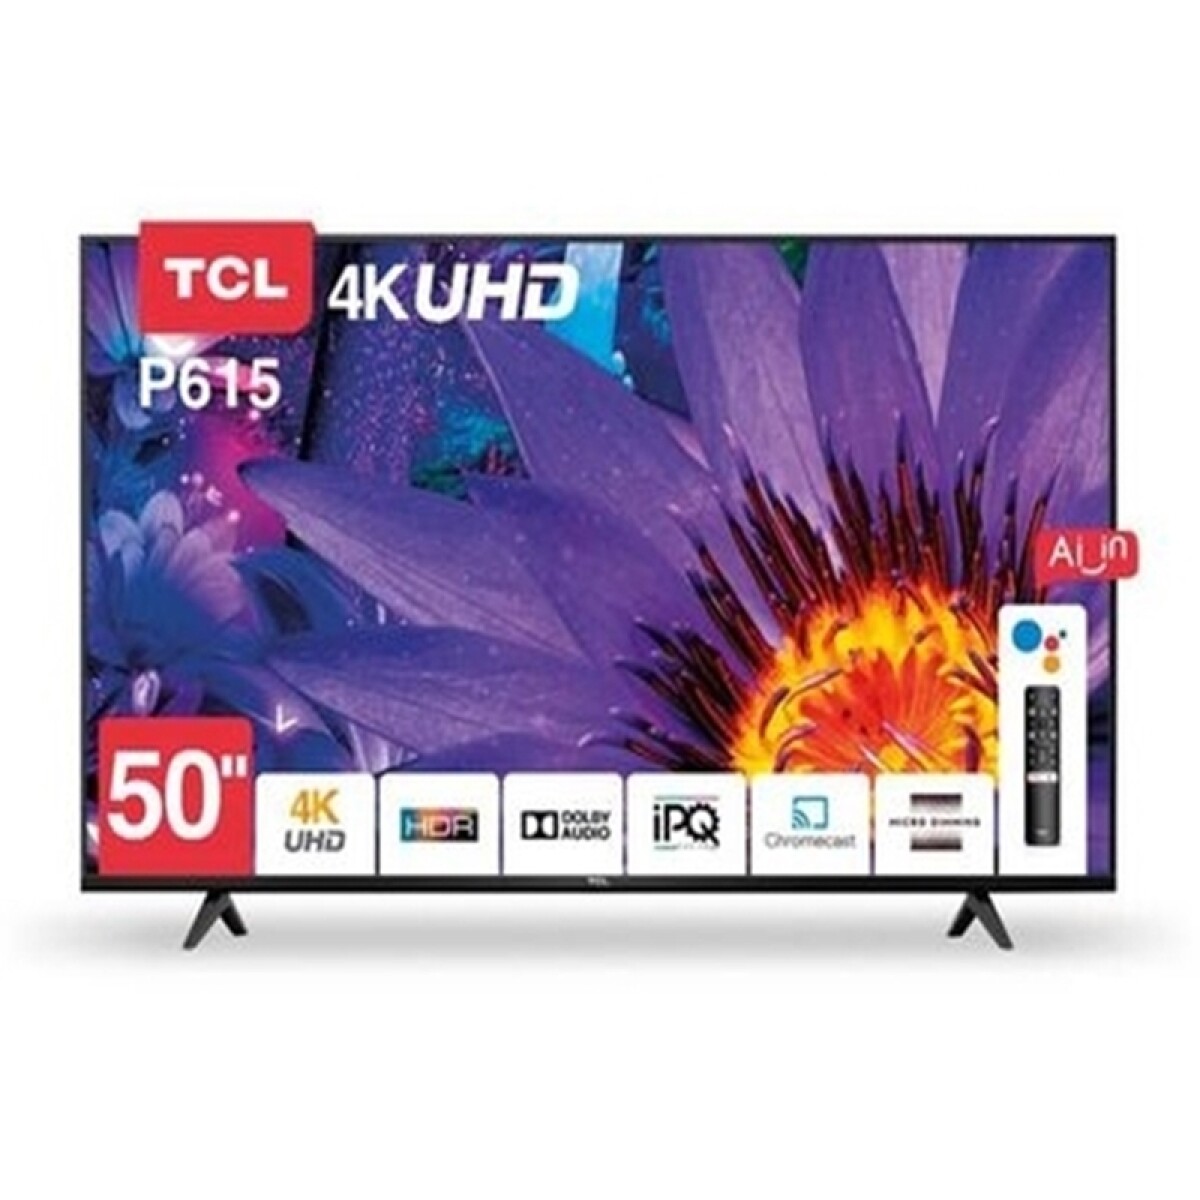 LED 50" SMART TV 4K - L50P615 TCL 